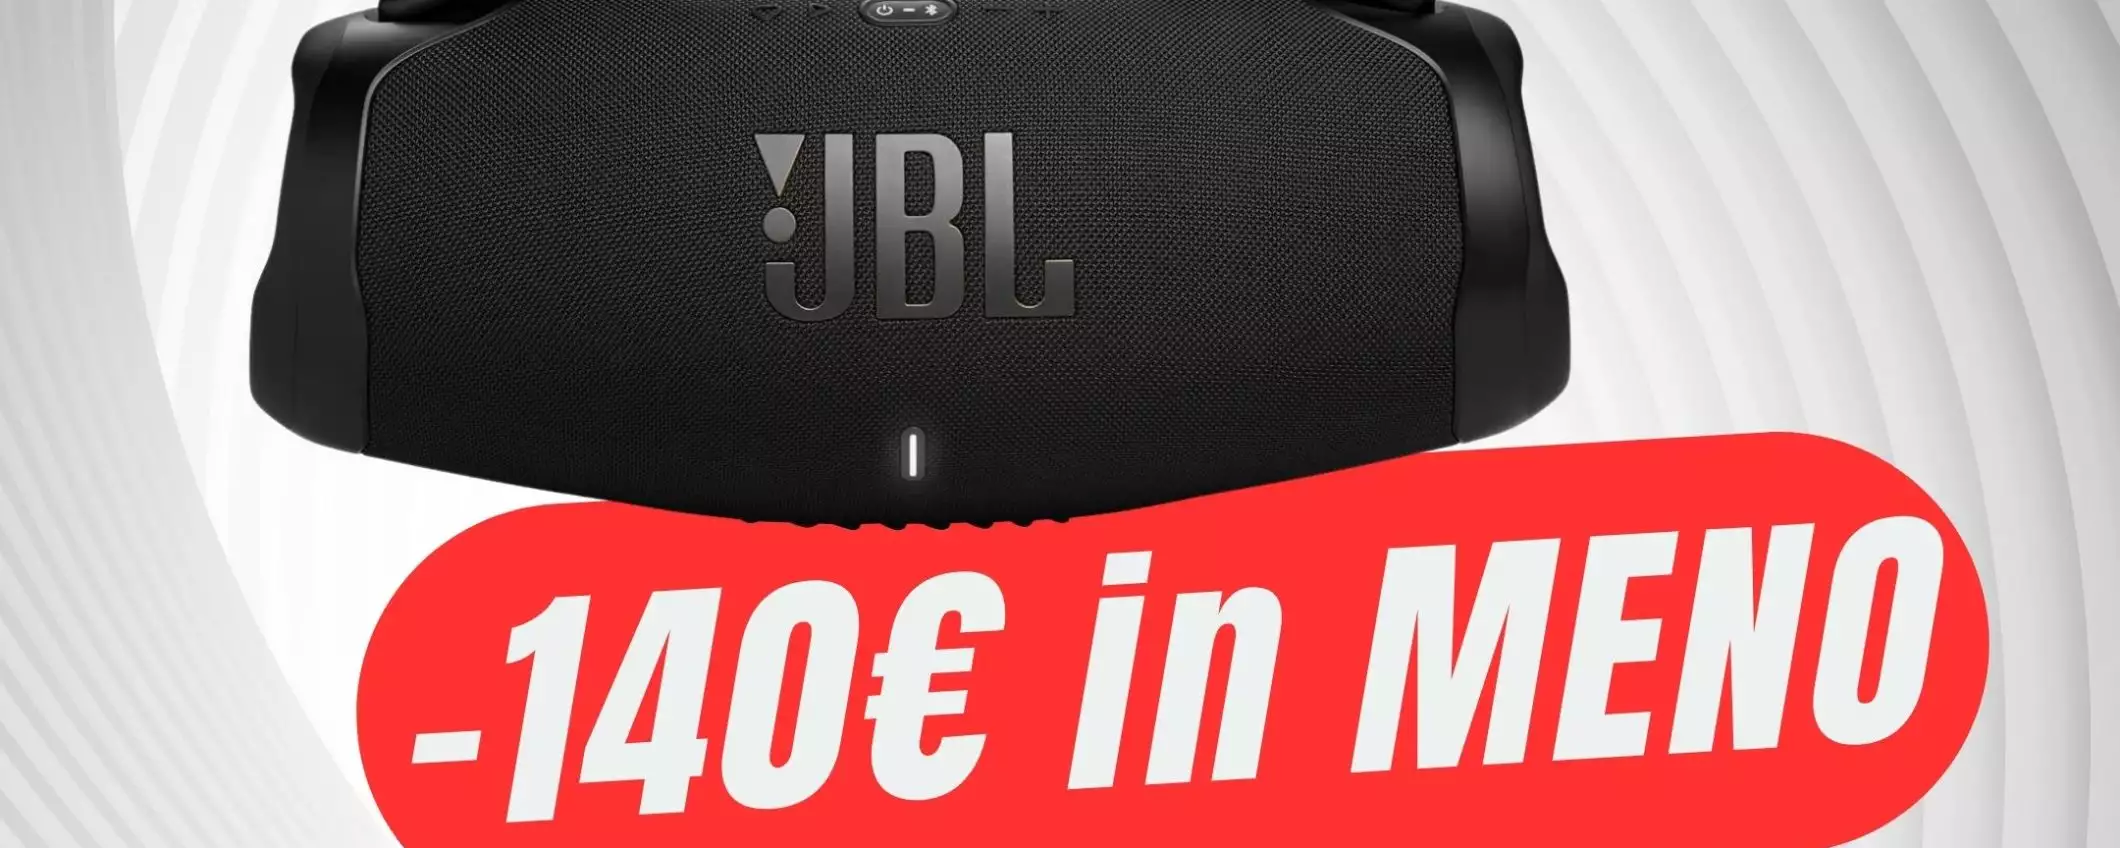 JBL Boombox 3: potenza da concerto ovunque (a -140€ in MENO!)